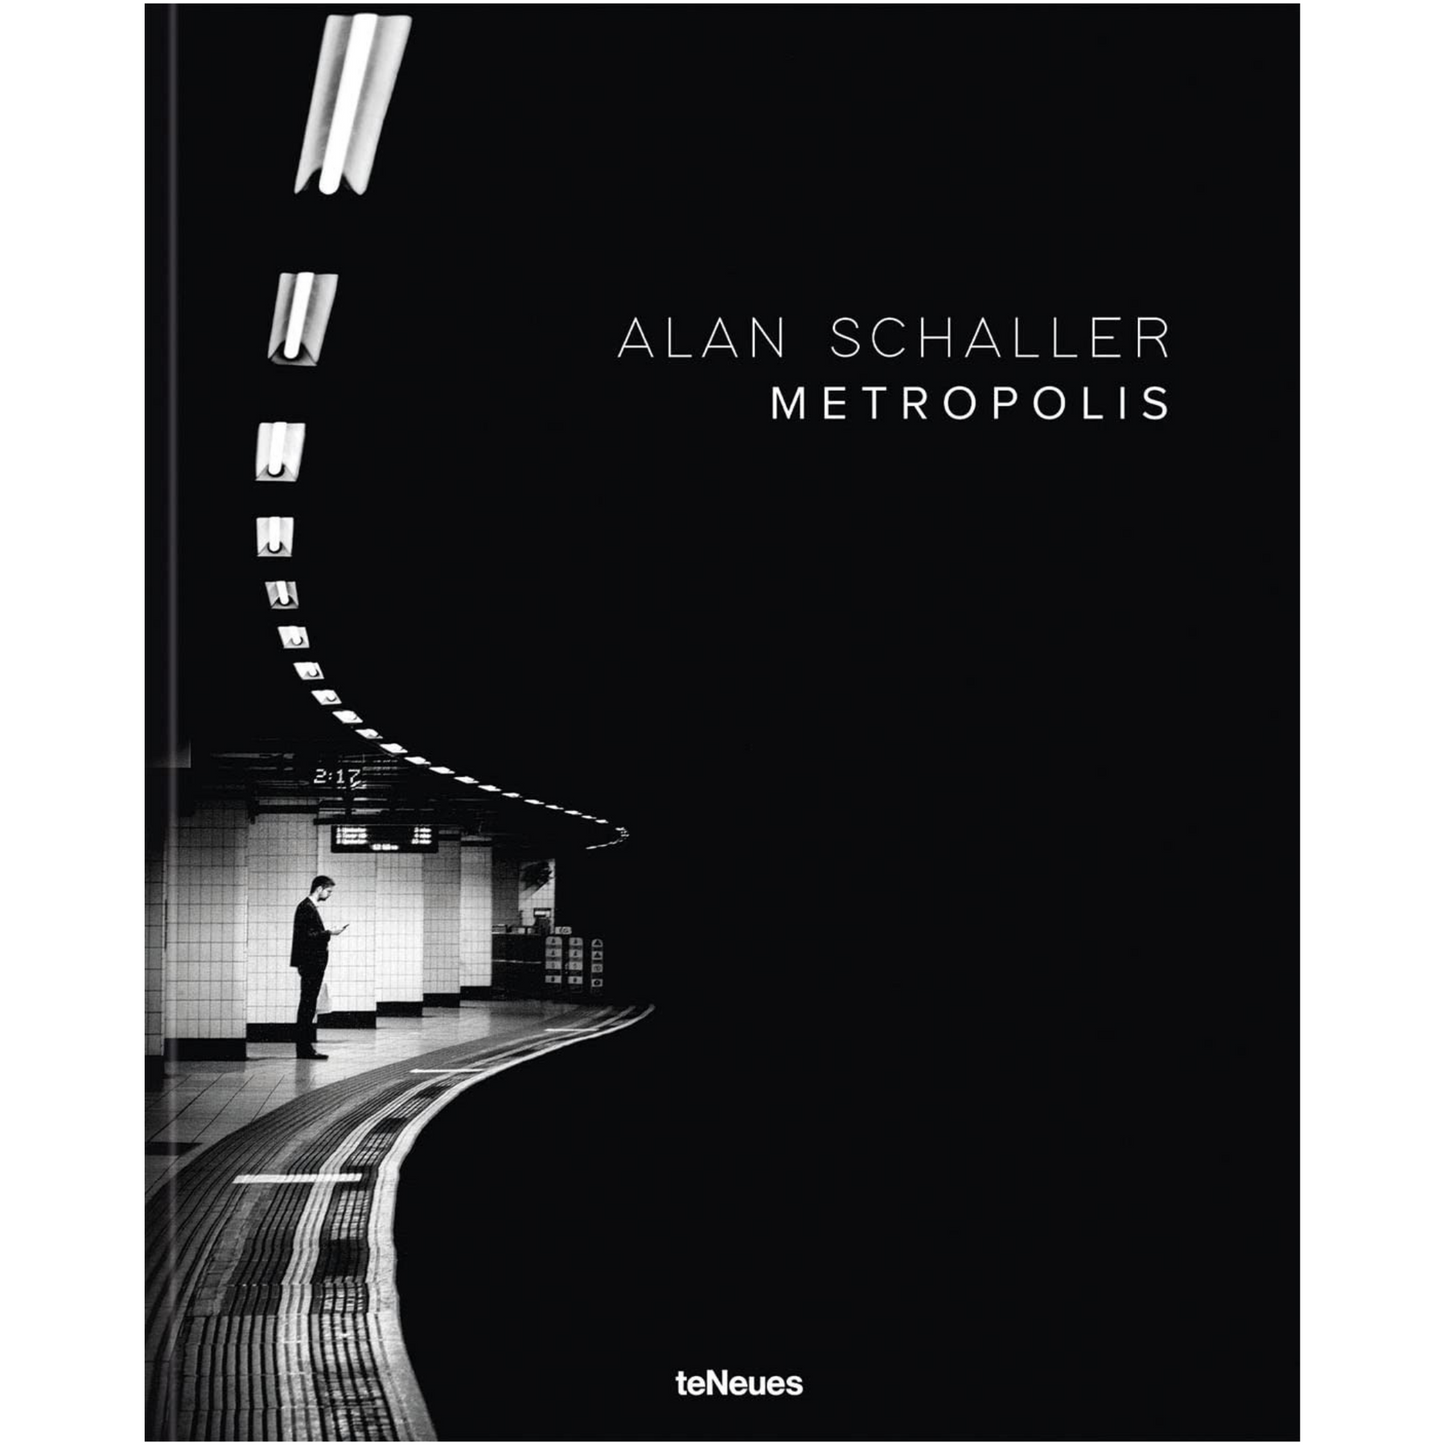 Metropolis, Alan Schaller - teNeues